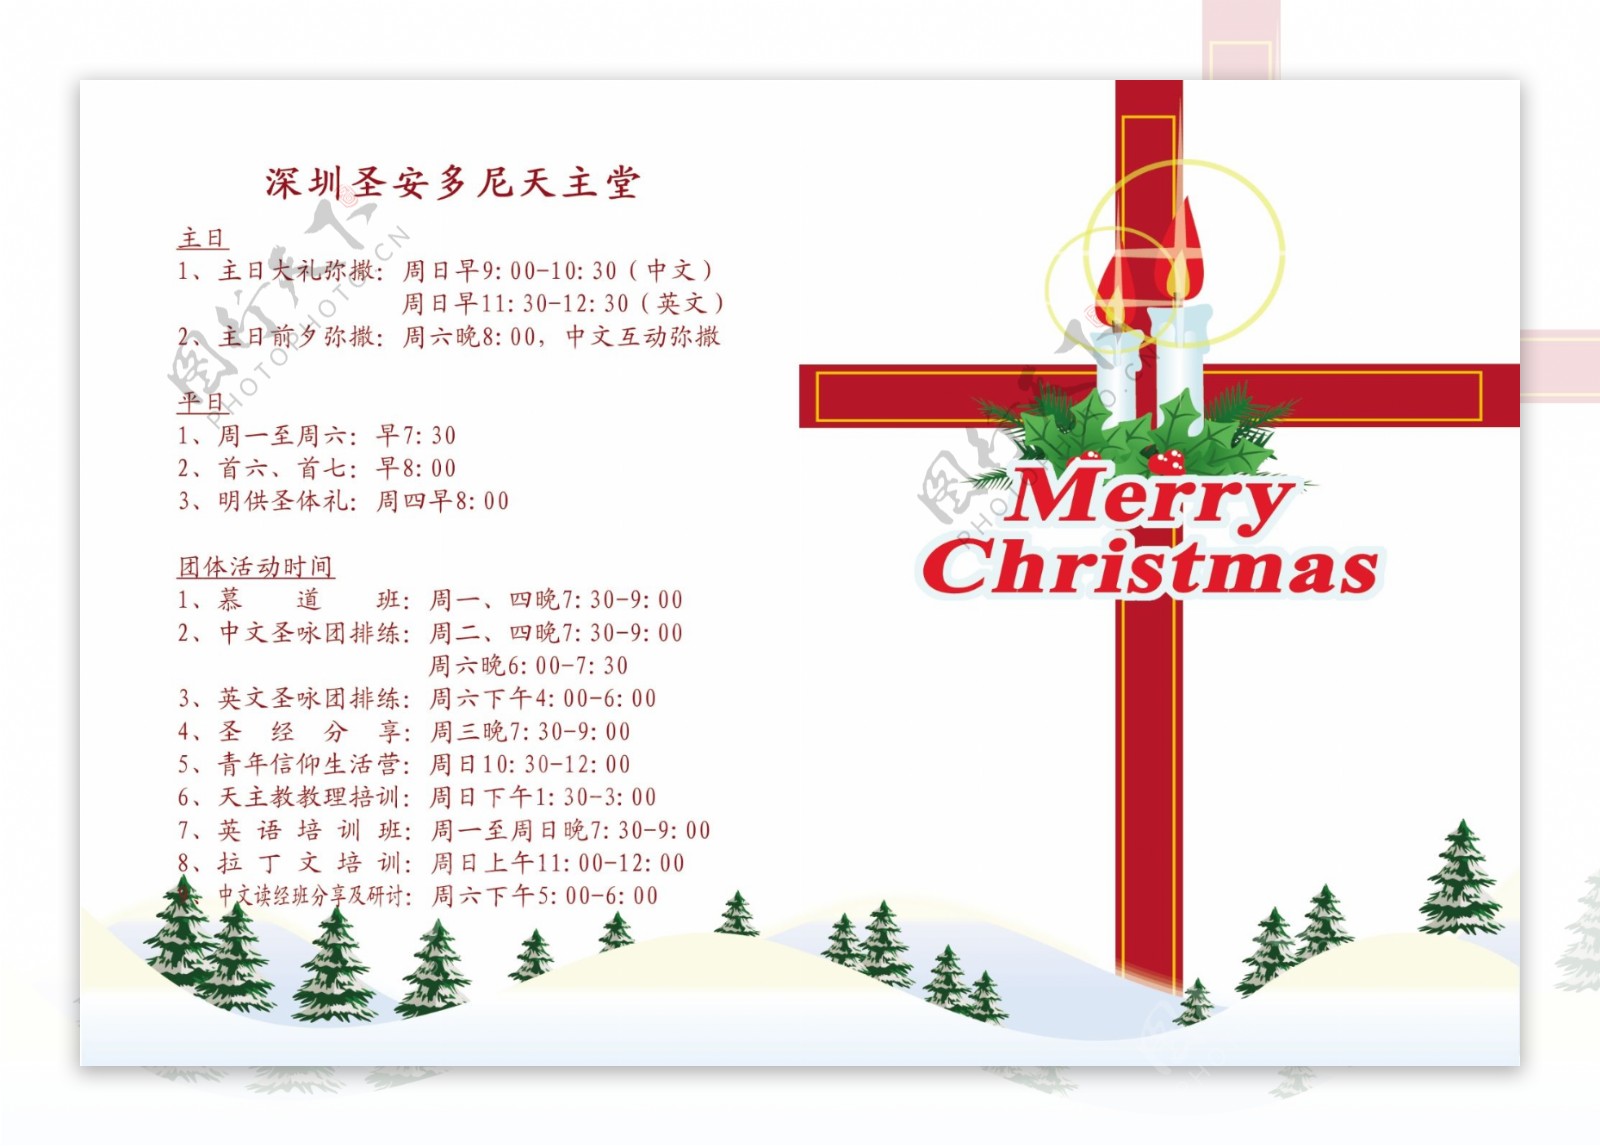 天主教耶稣圣诞节卡片图片psd下载